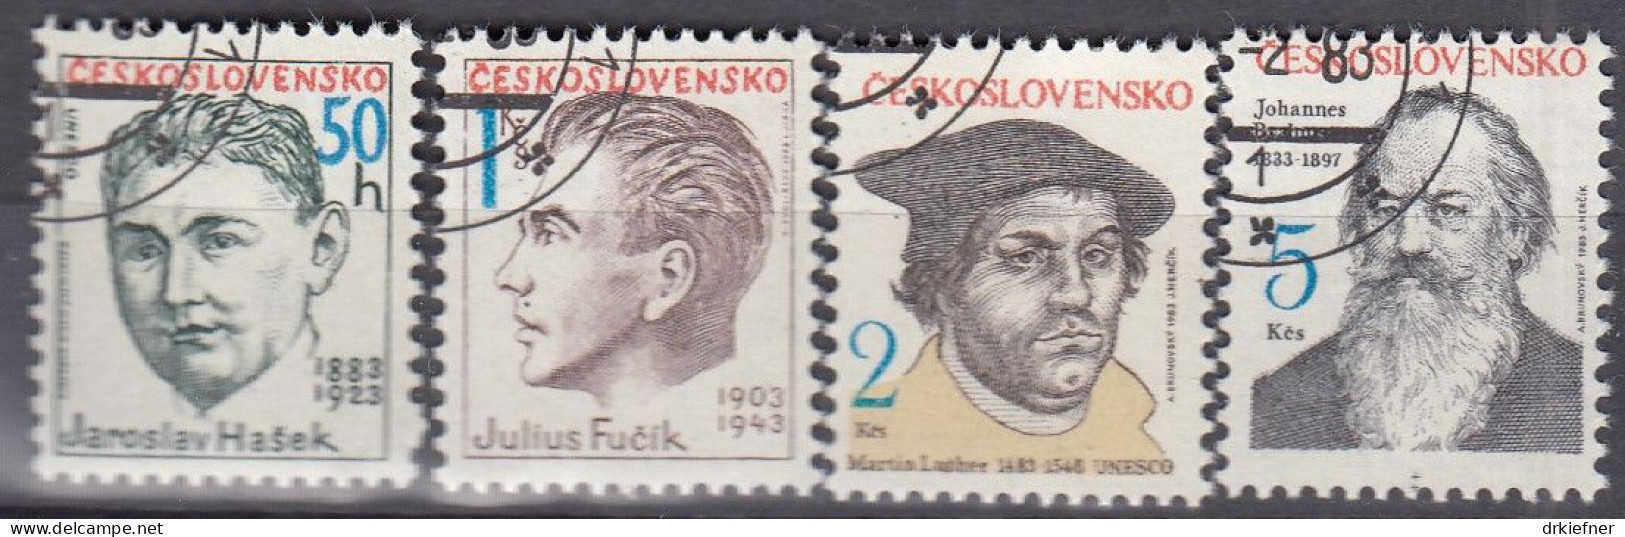 TSCHECHOSLOWAKEI  2699-2702, Gestempelt, Persönlichkeiten, Martin Luther, Johannes Brahms U.a., 1983 - Gebraucht